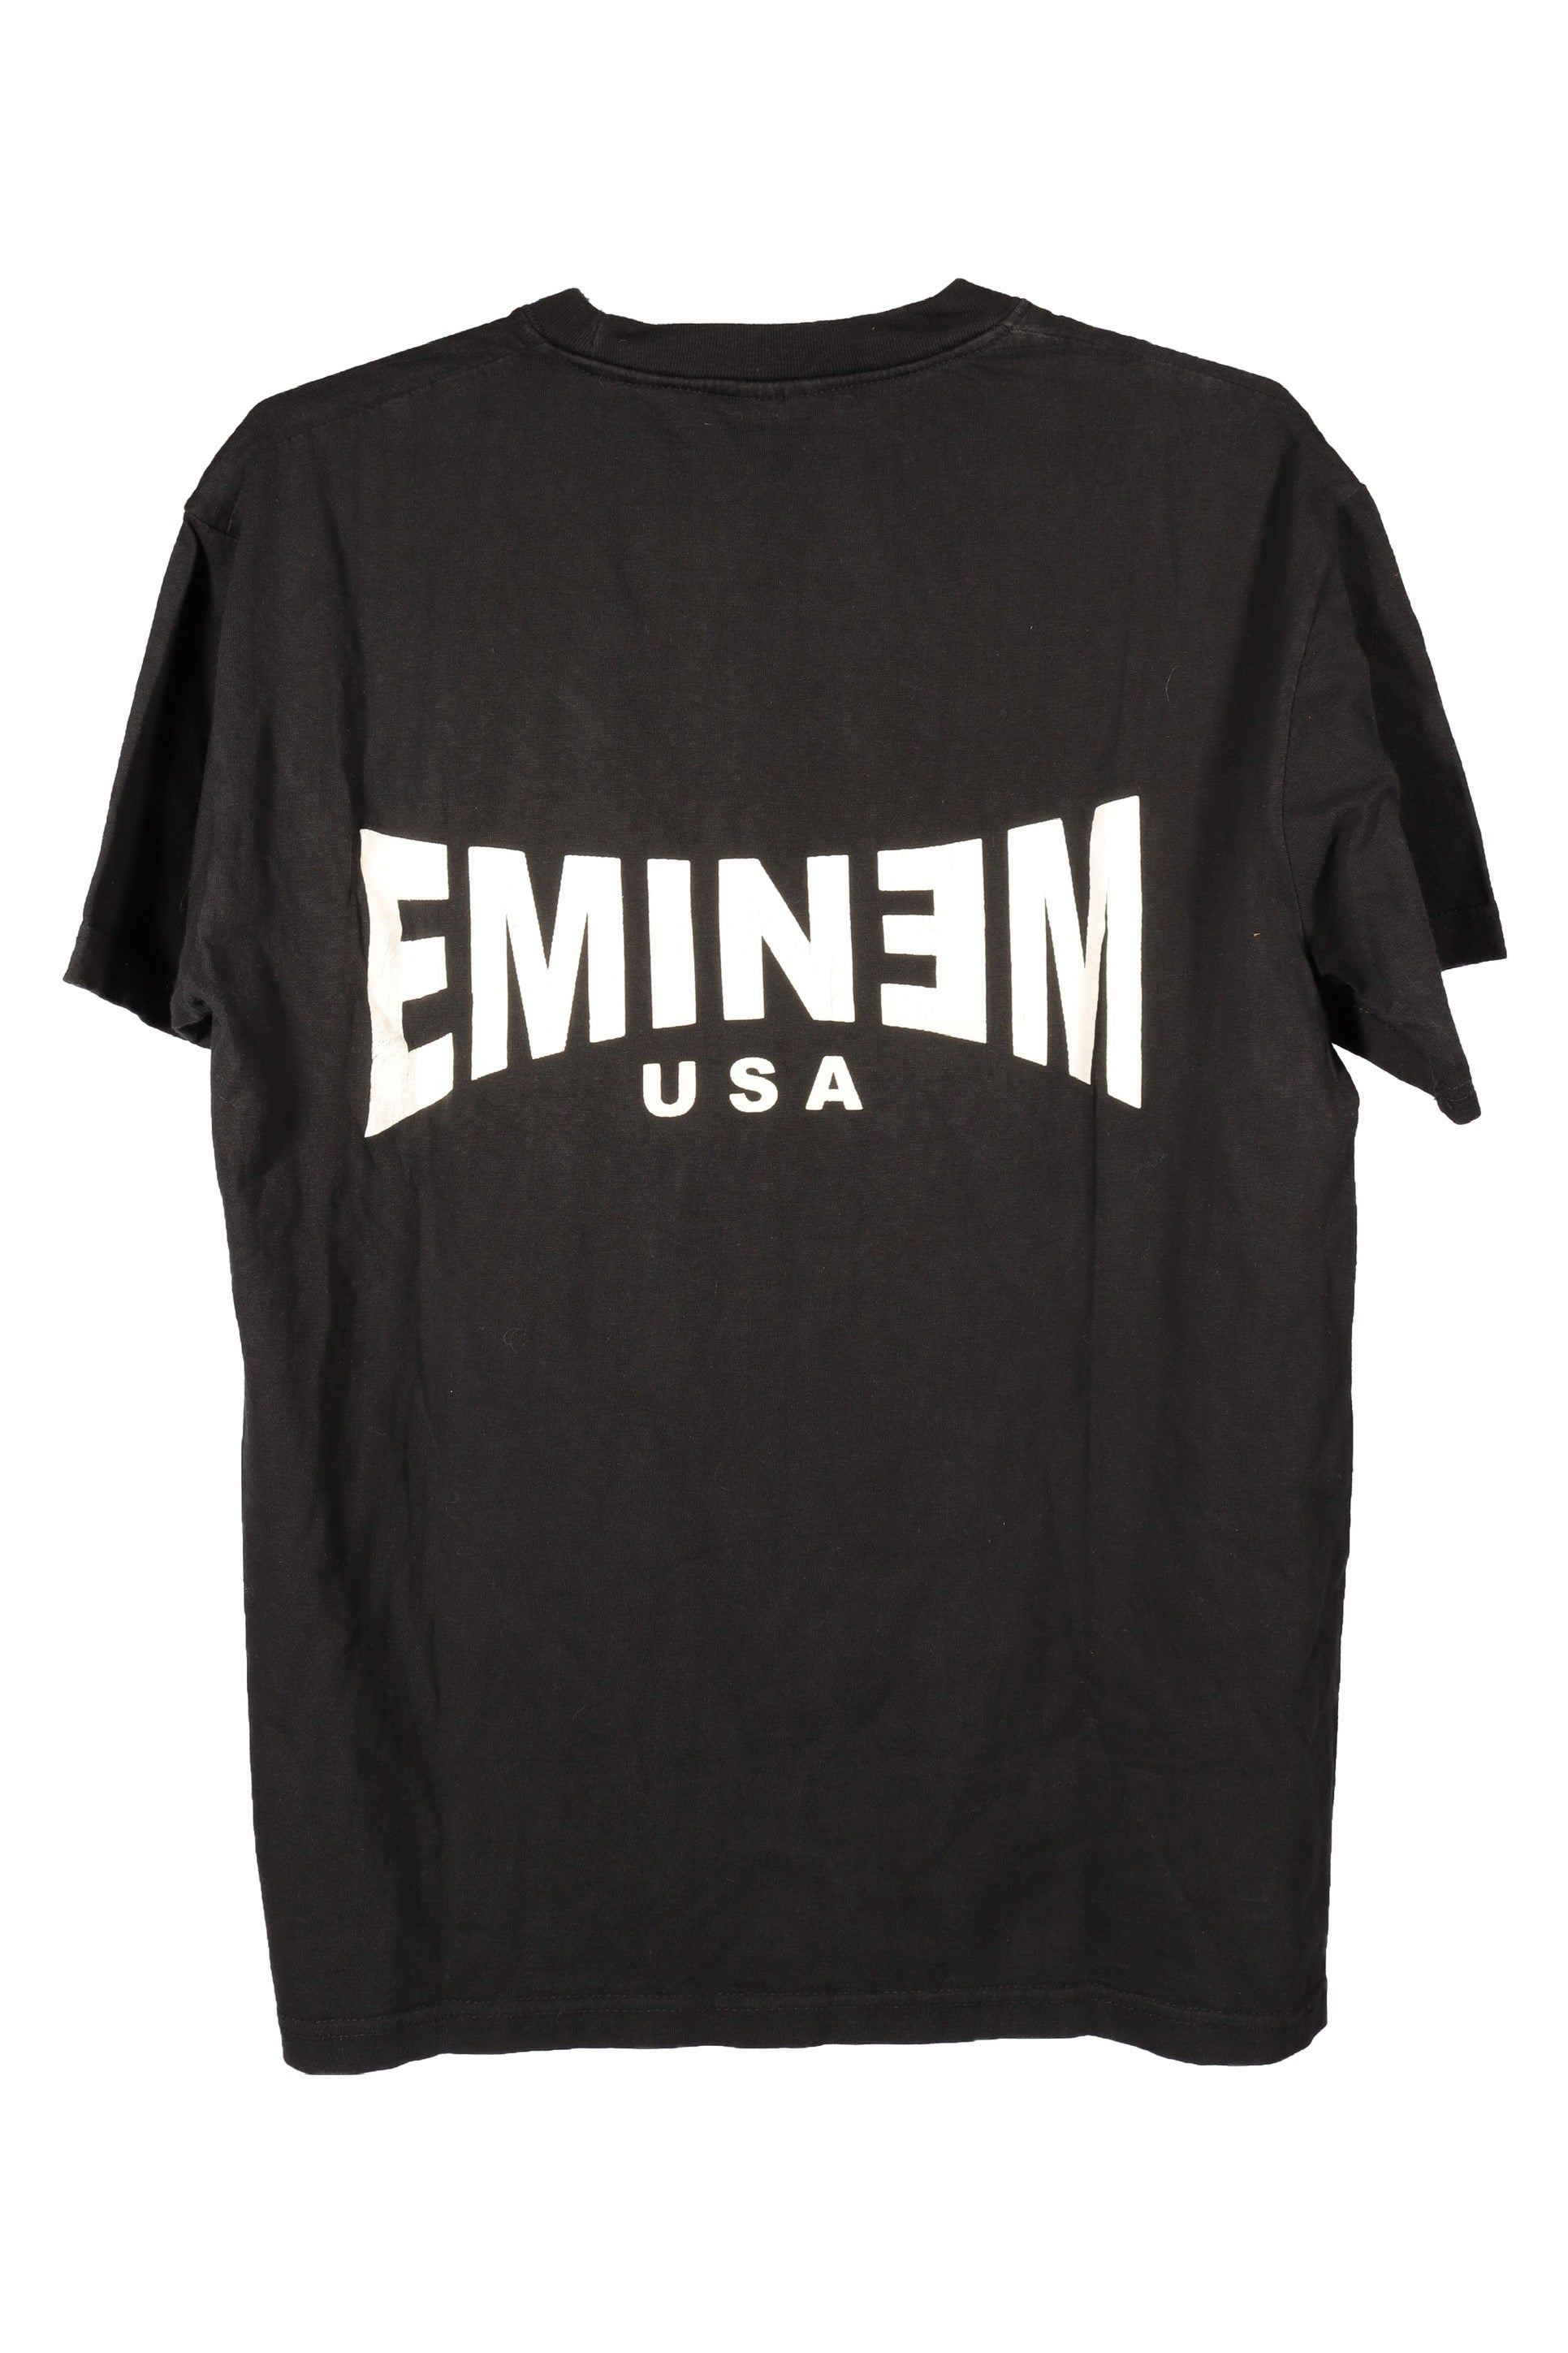 Eminem USA